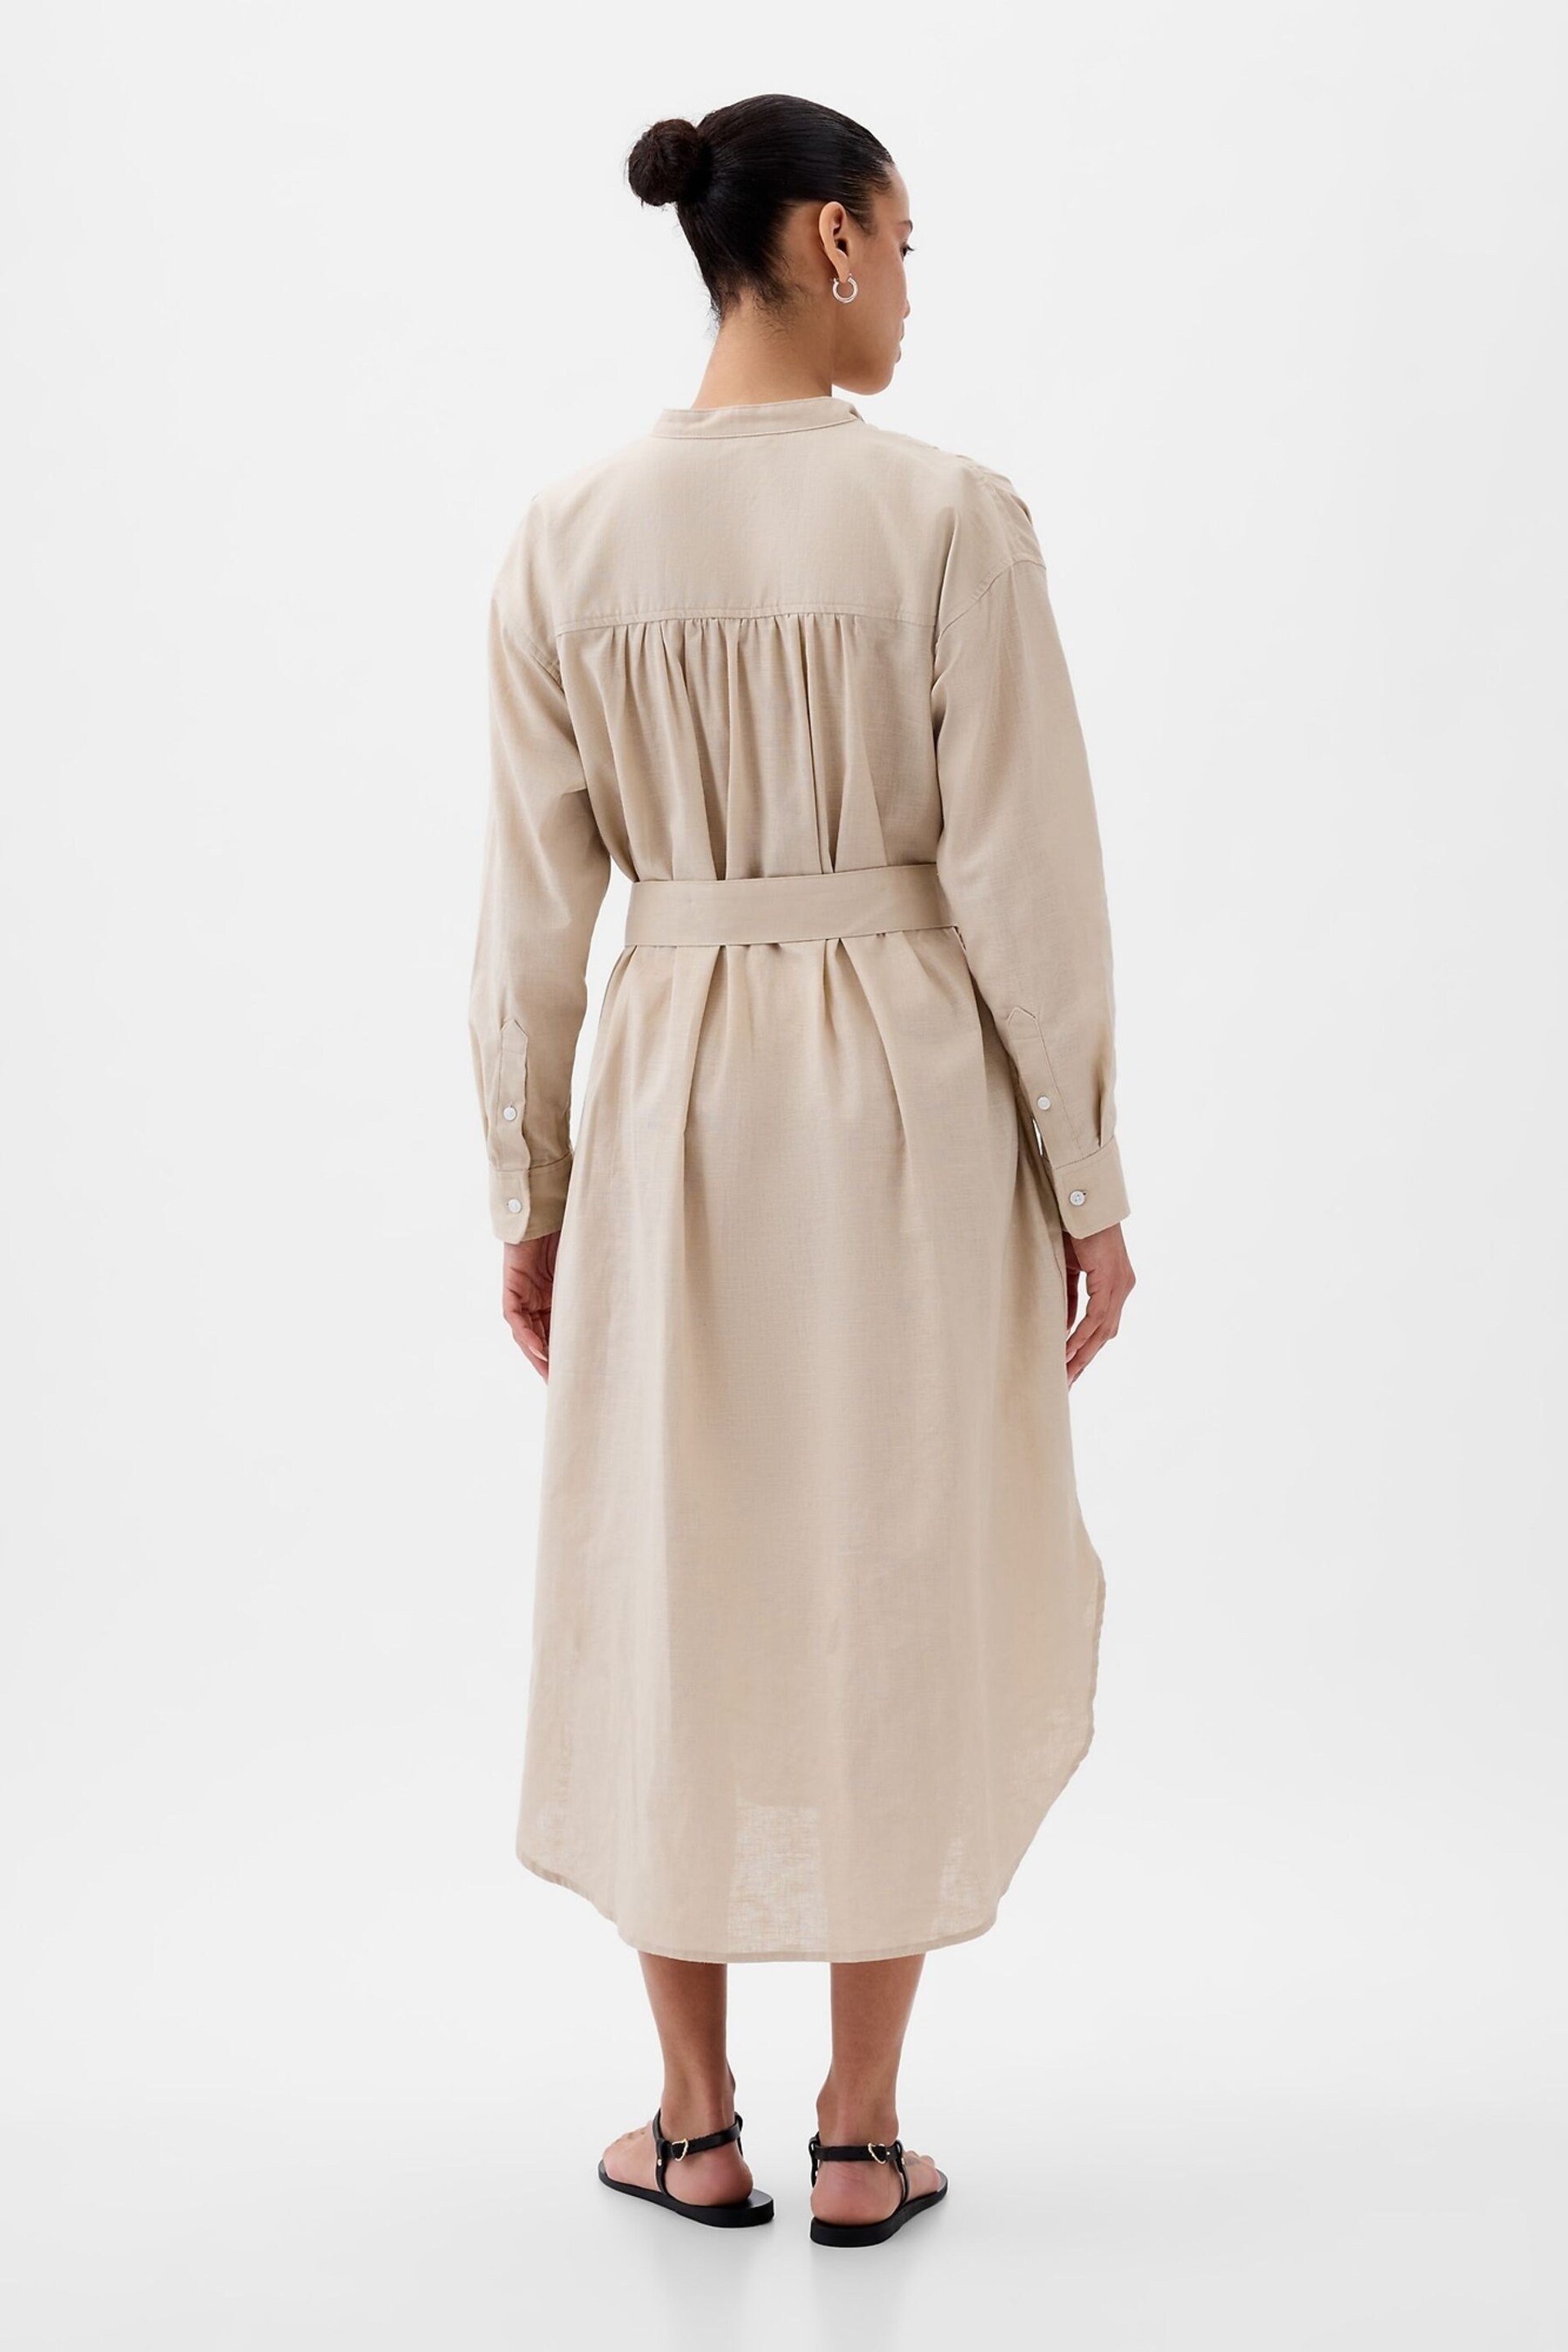 Gap Neutral Linen Blend Long Sleeve Shirt Dress - Image 2 of 5